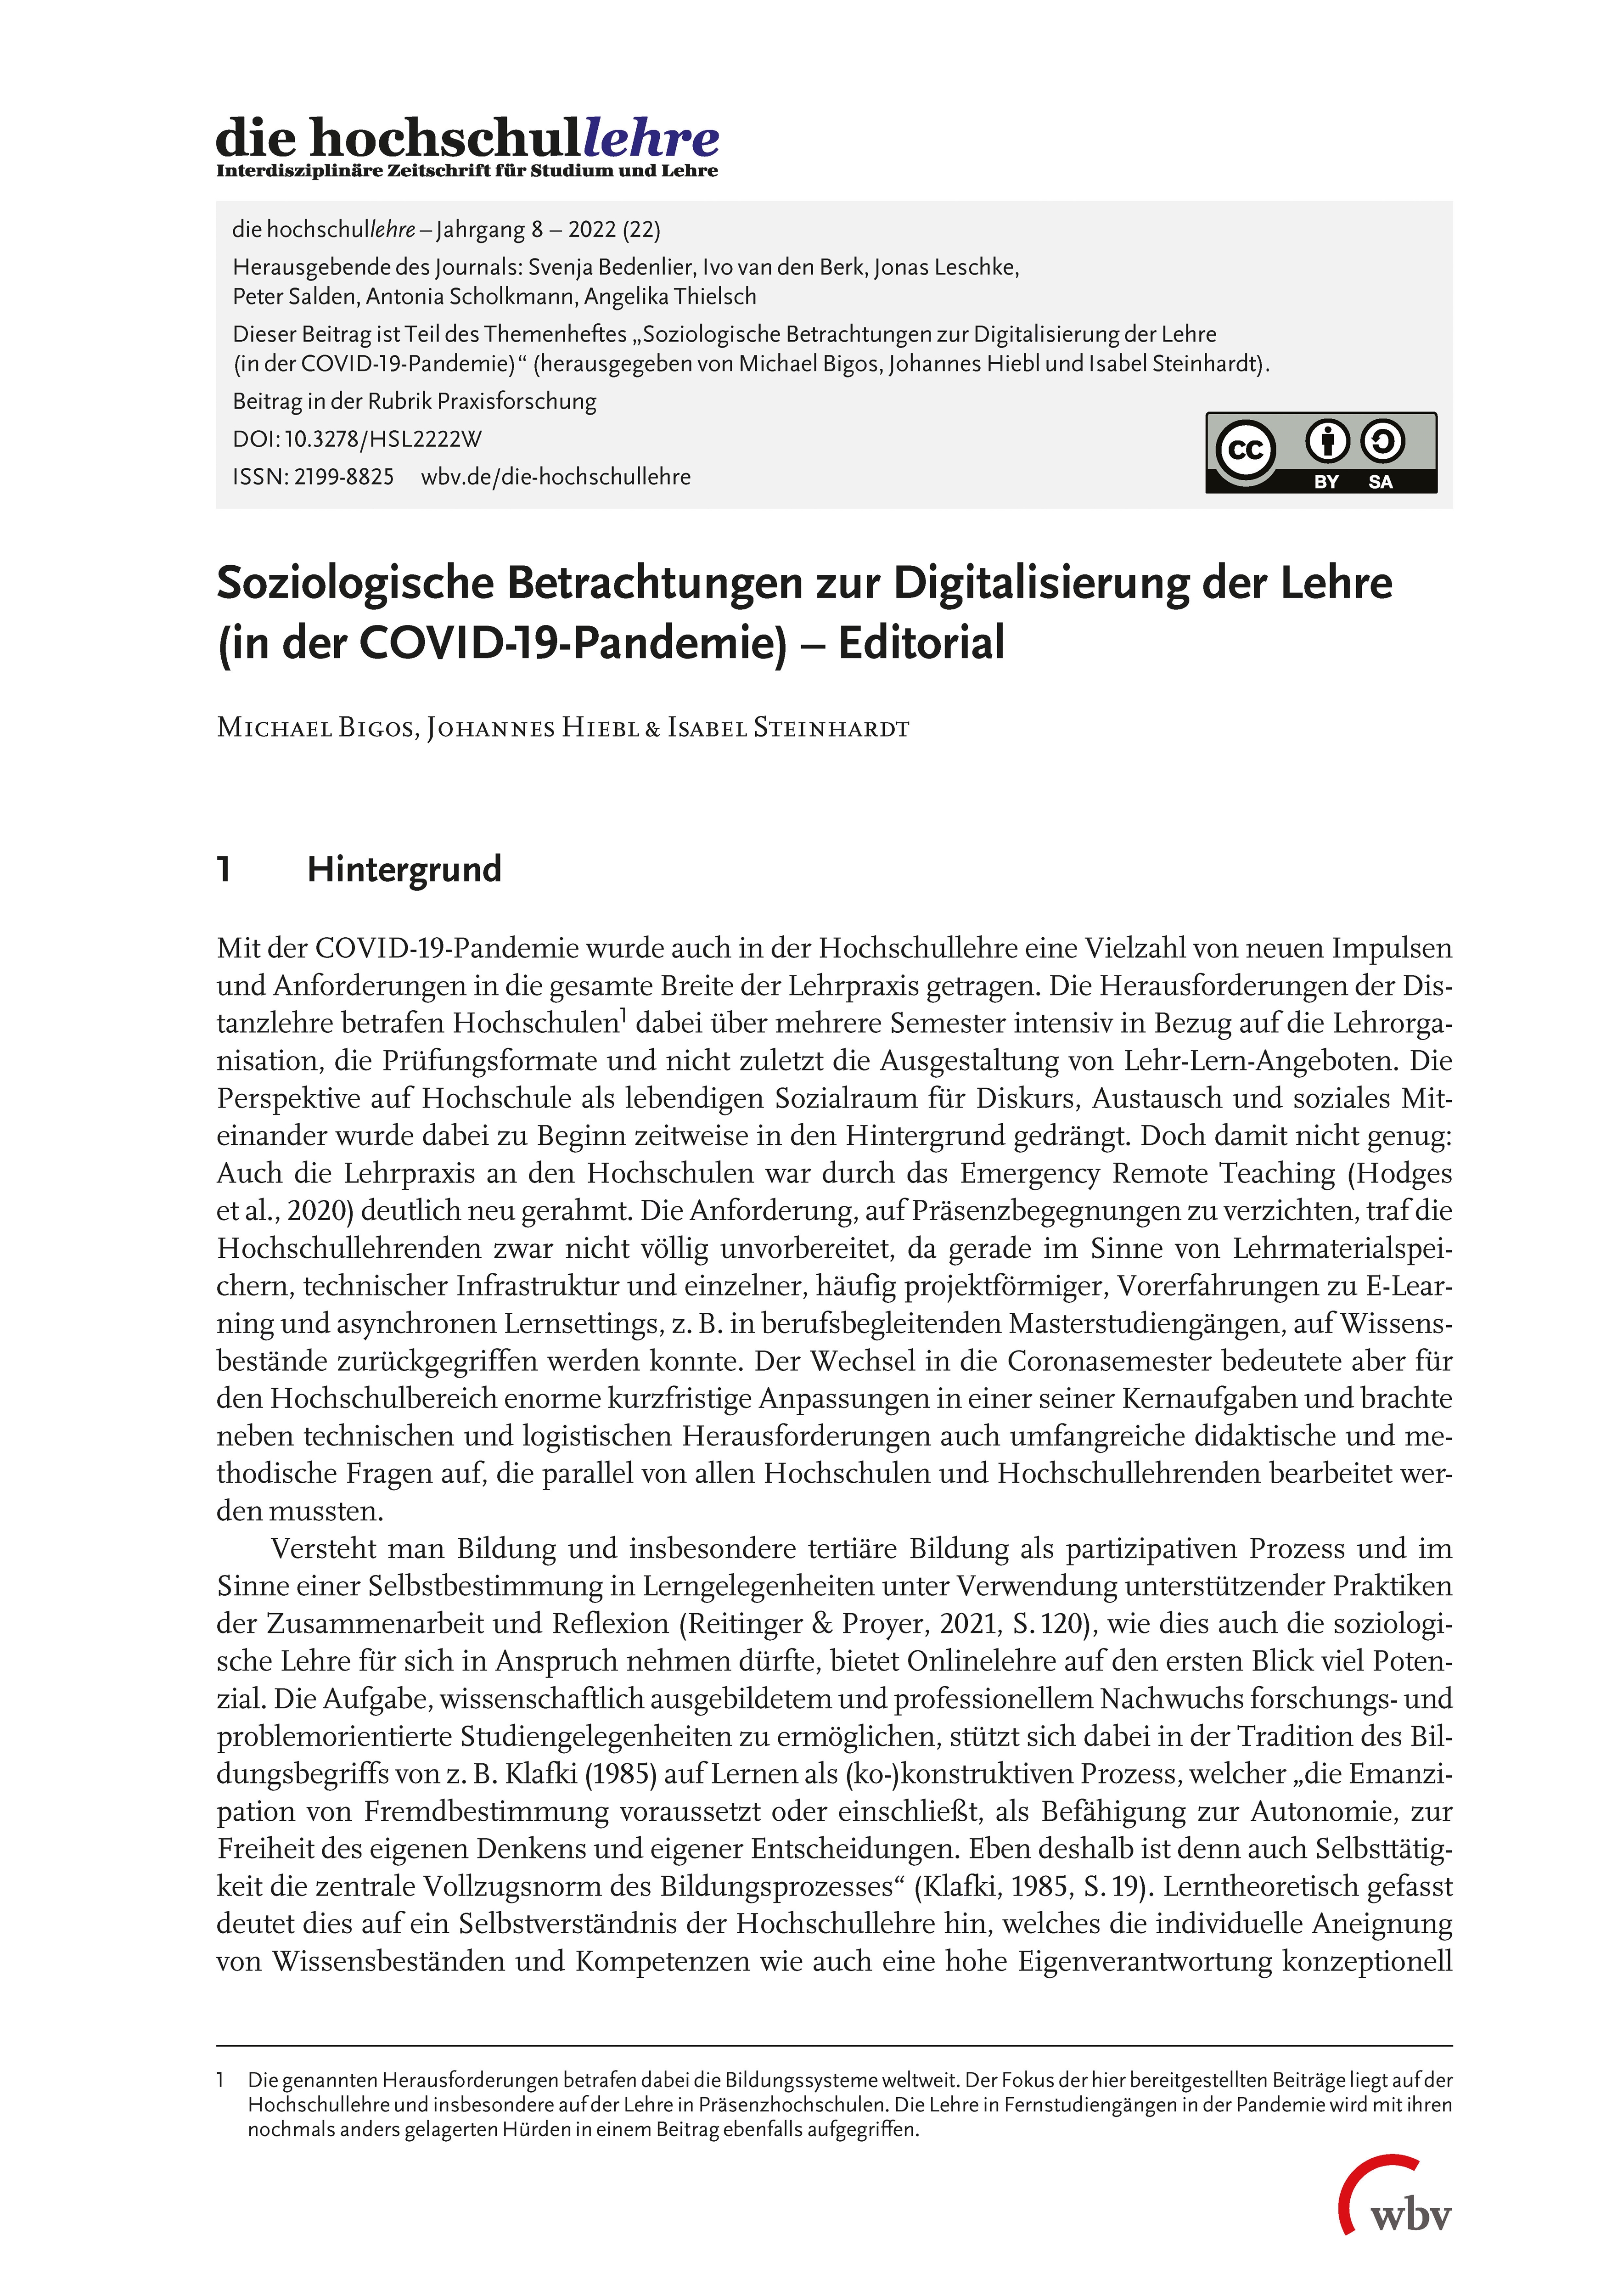 Soziologische Betrachtungen zur Digitalisierung der Lehre (in der COVID-19-Pandemie). Editorial